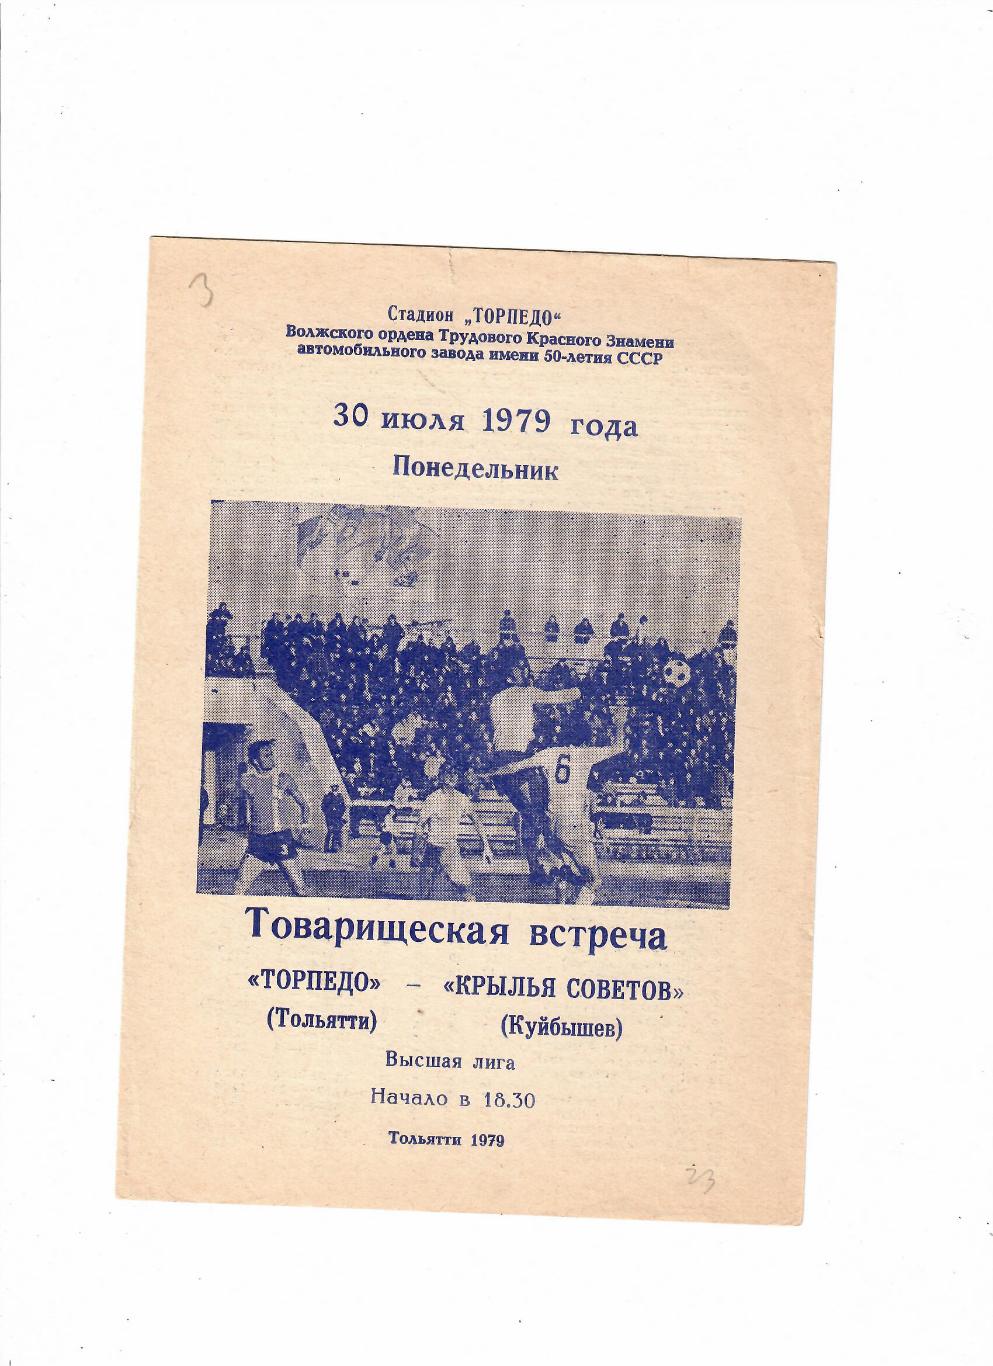 Торпедо Тольятти-Крылья Советов Куйбышев 1979